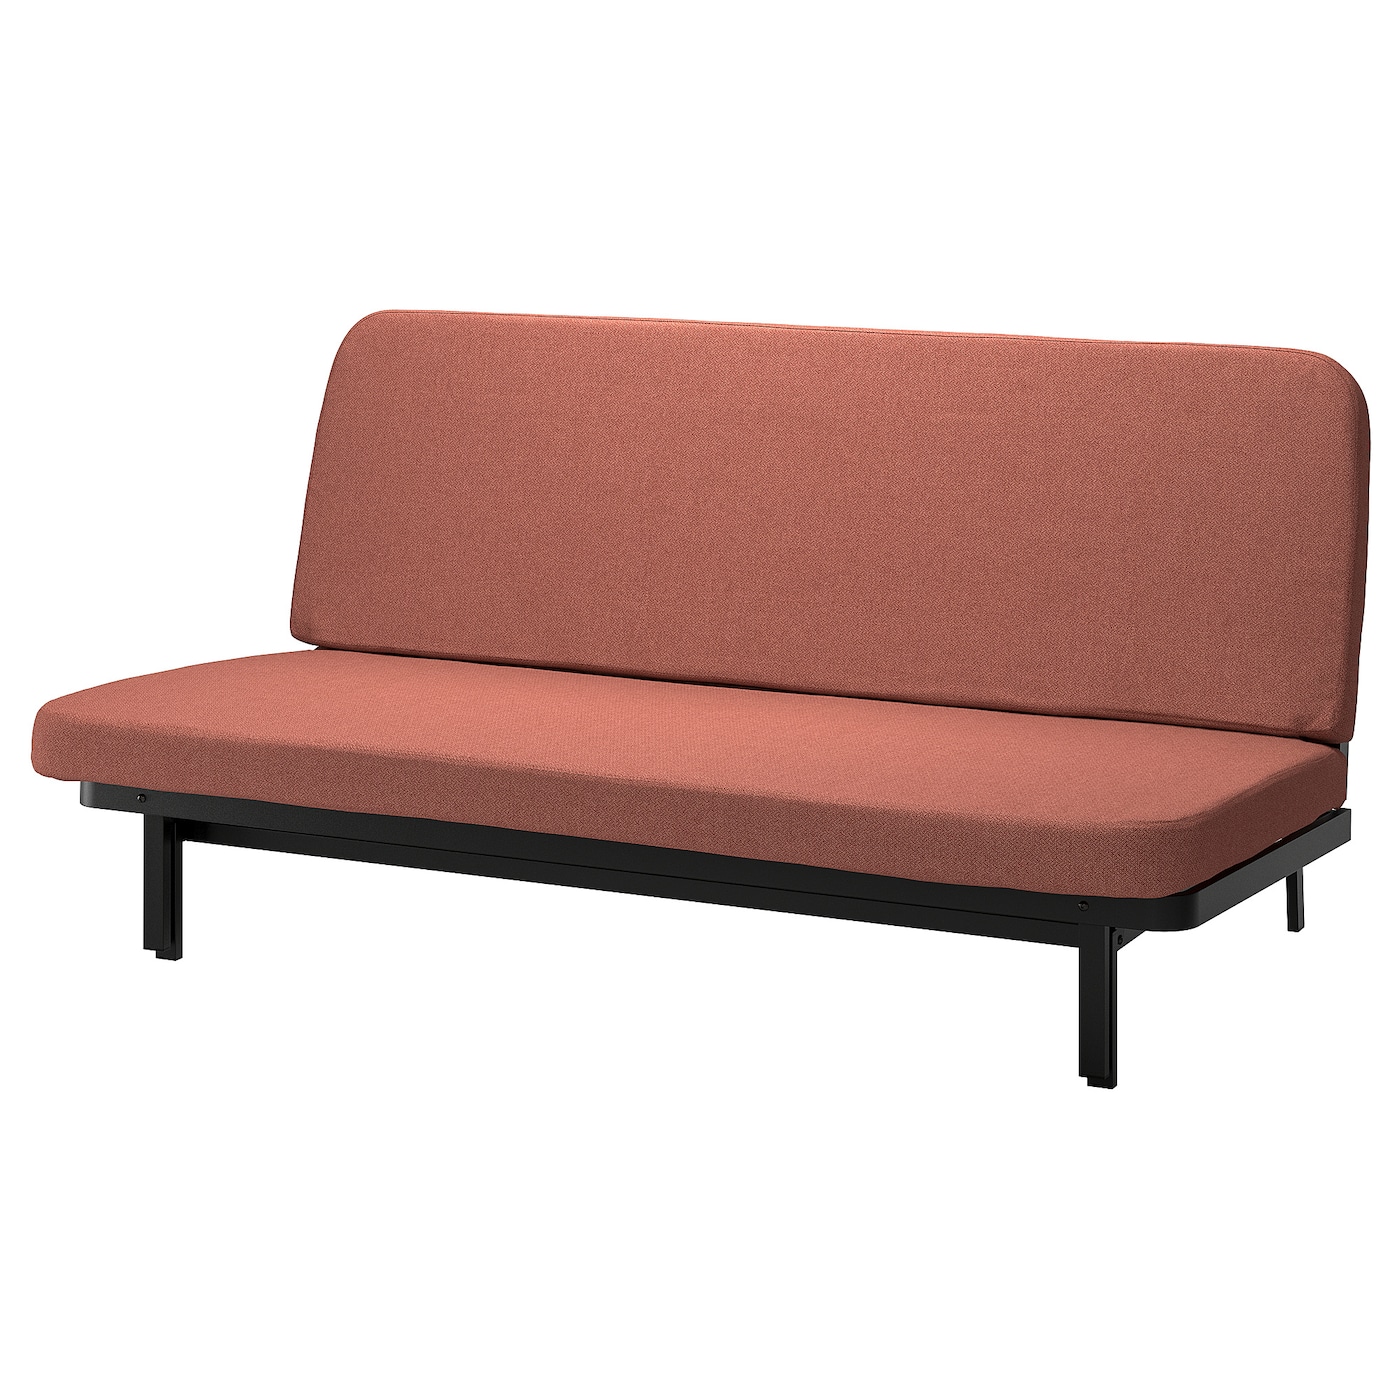 NYHAMN 3-местный диван-кровать, пружинный матрас в комплекте/Скартофта красный/коричневый IKEA домашний одноместный диван кровать спинка стул для спальни односпальный диван для девушек удобное эркерное окно маленький диван складн